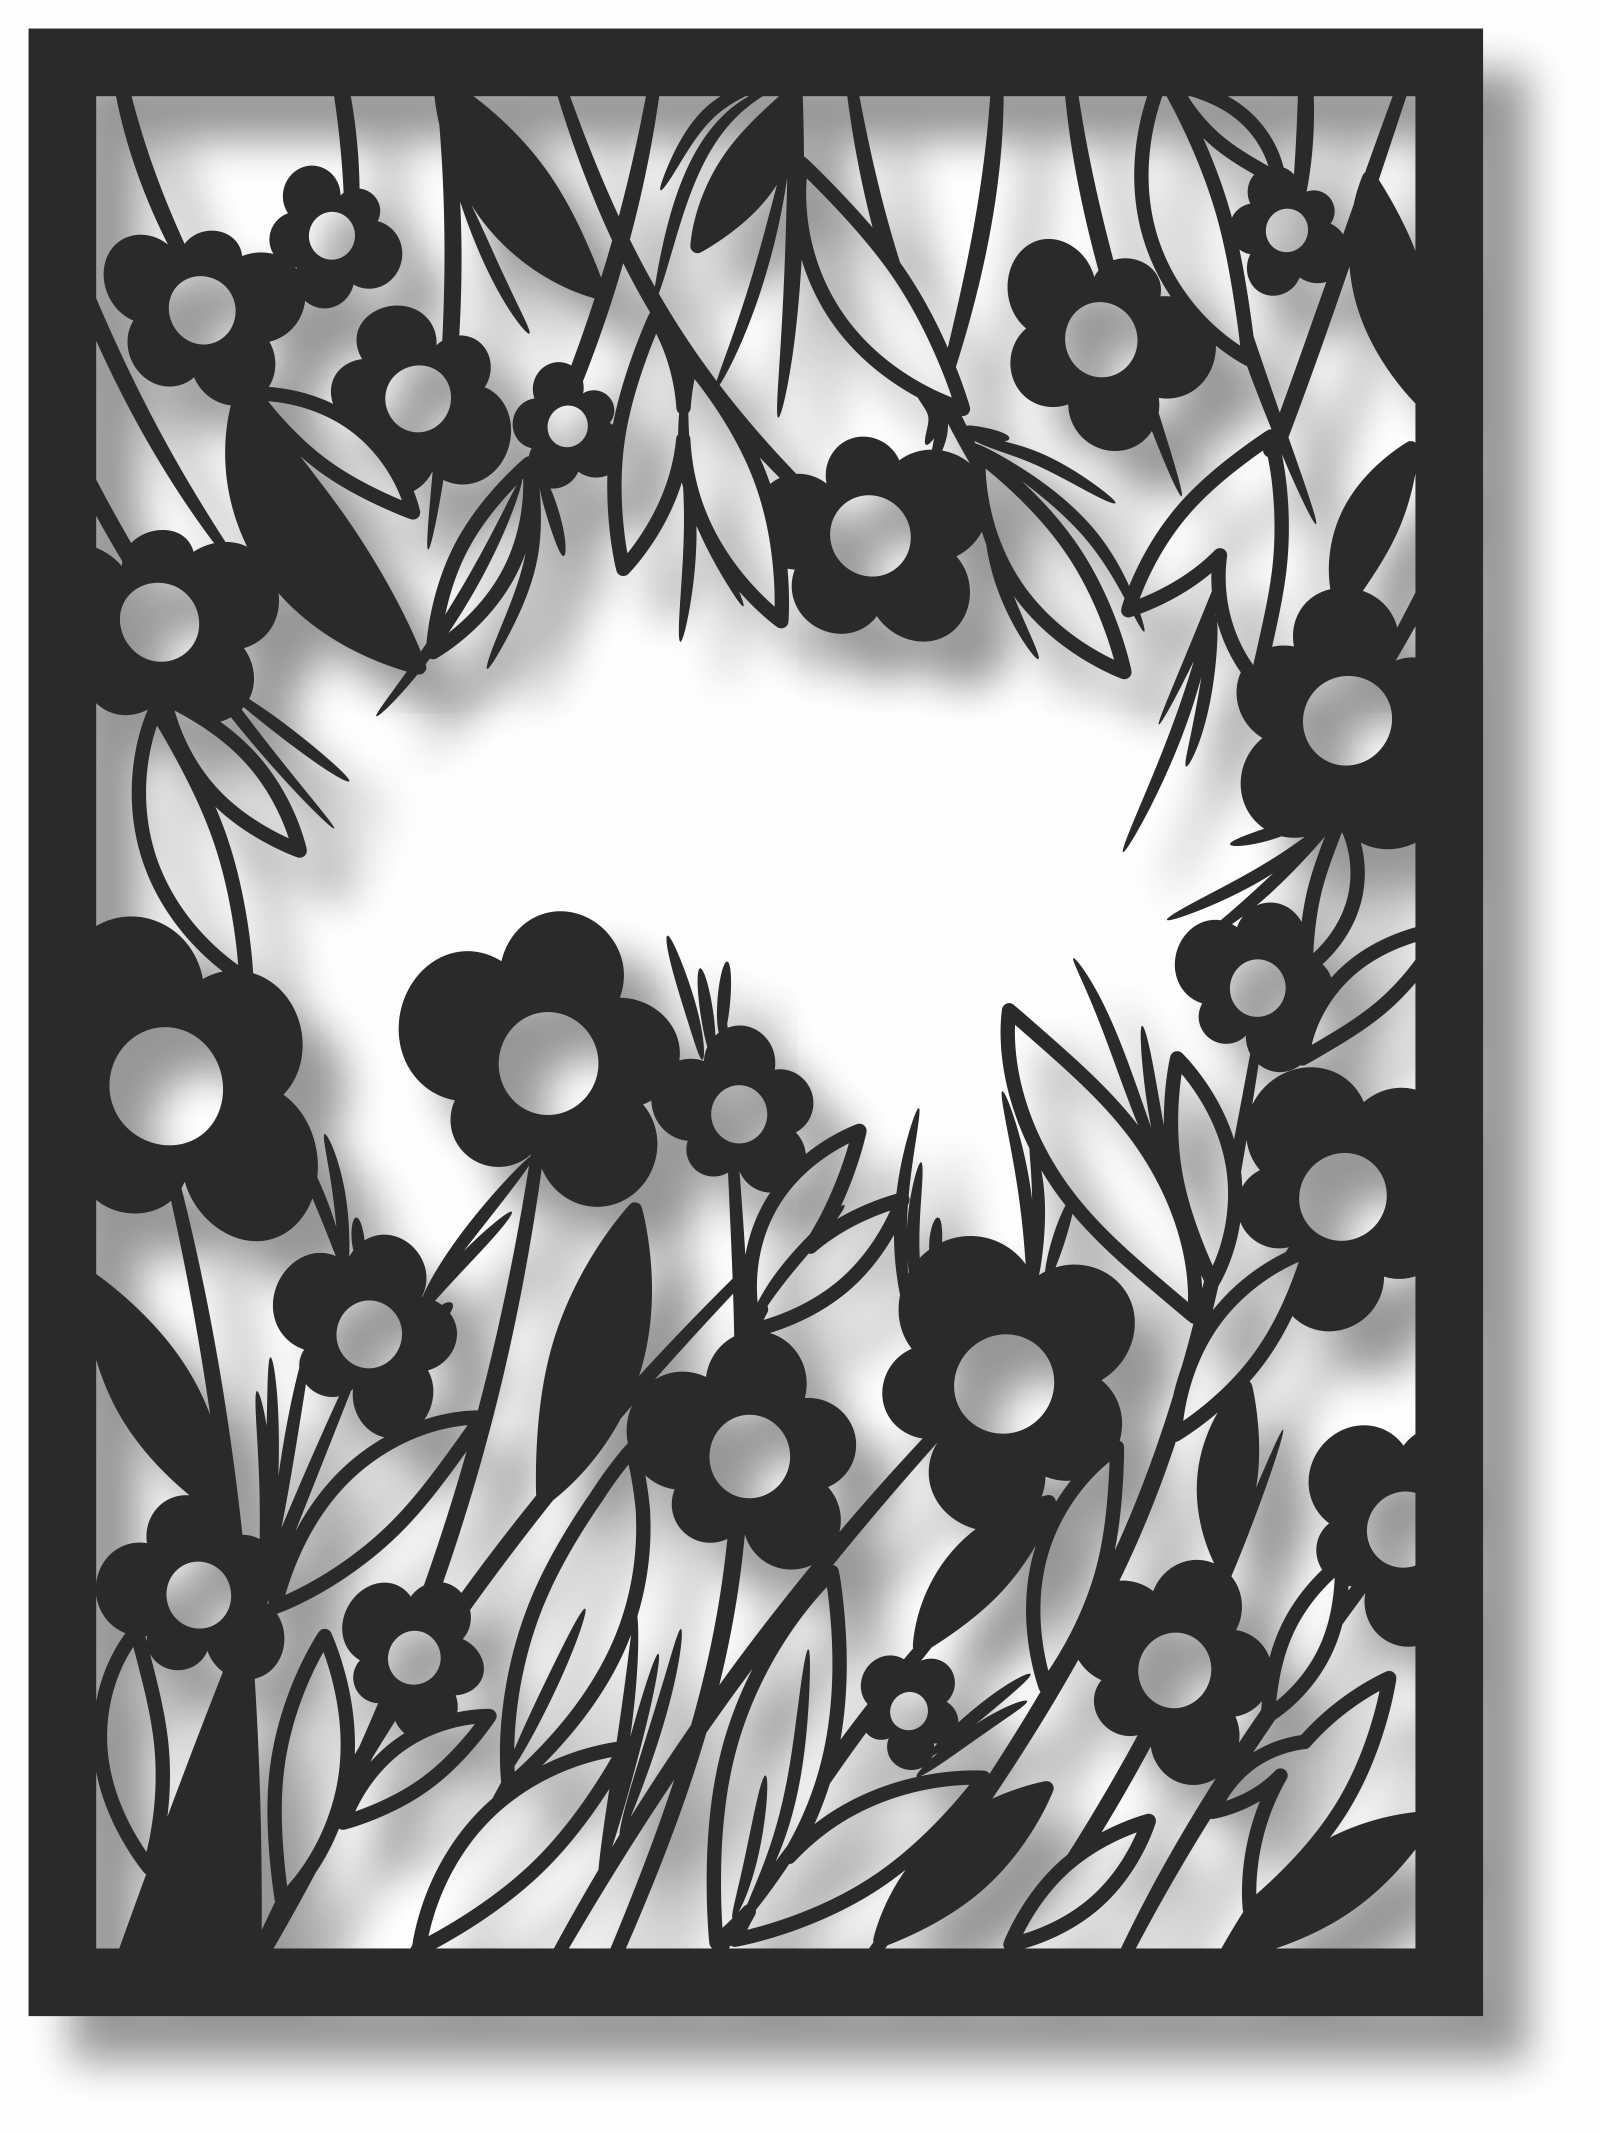 Bild Wandbild 3D Wandtattoo Acryl Mobile Blumen Floral Natur